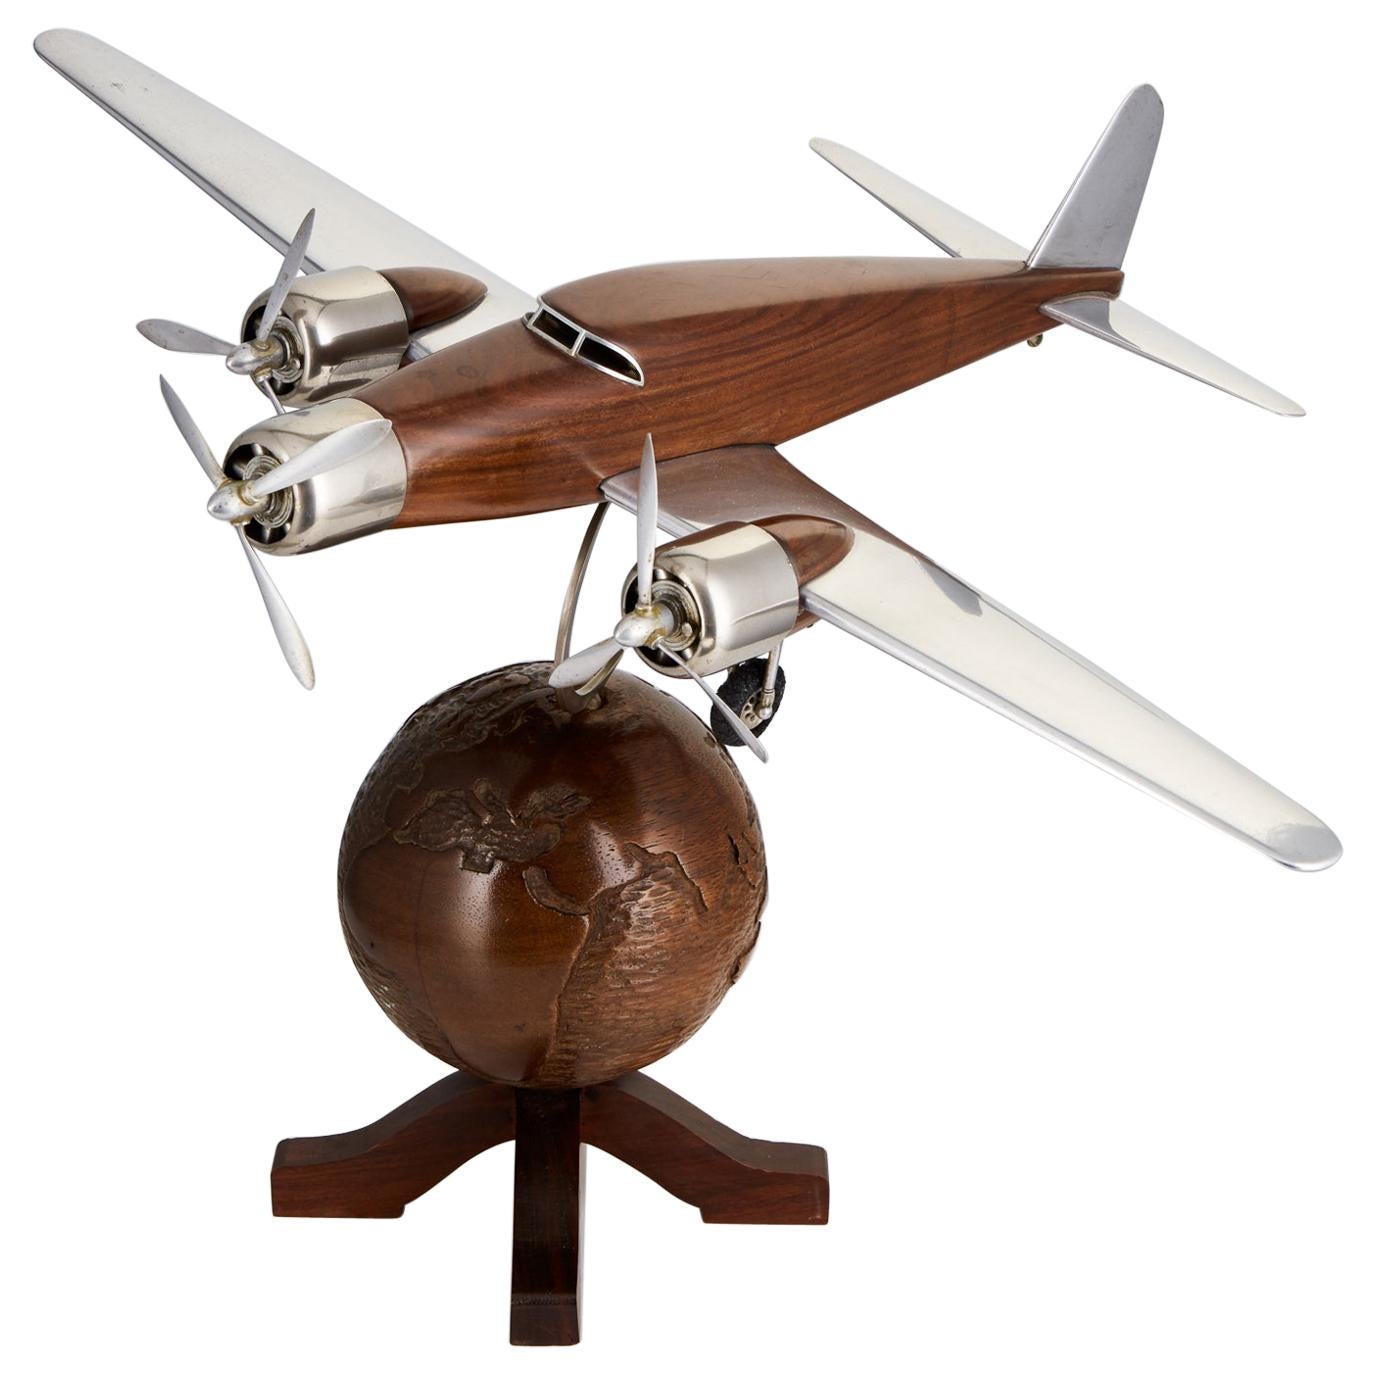 modèle Art Déco français du 20ème siècle d'un avion sur un globe terrestre:: vers 1930